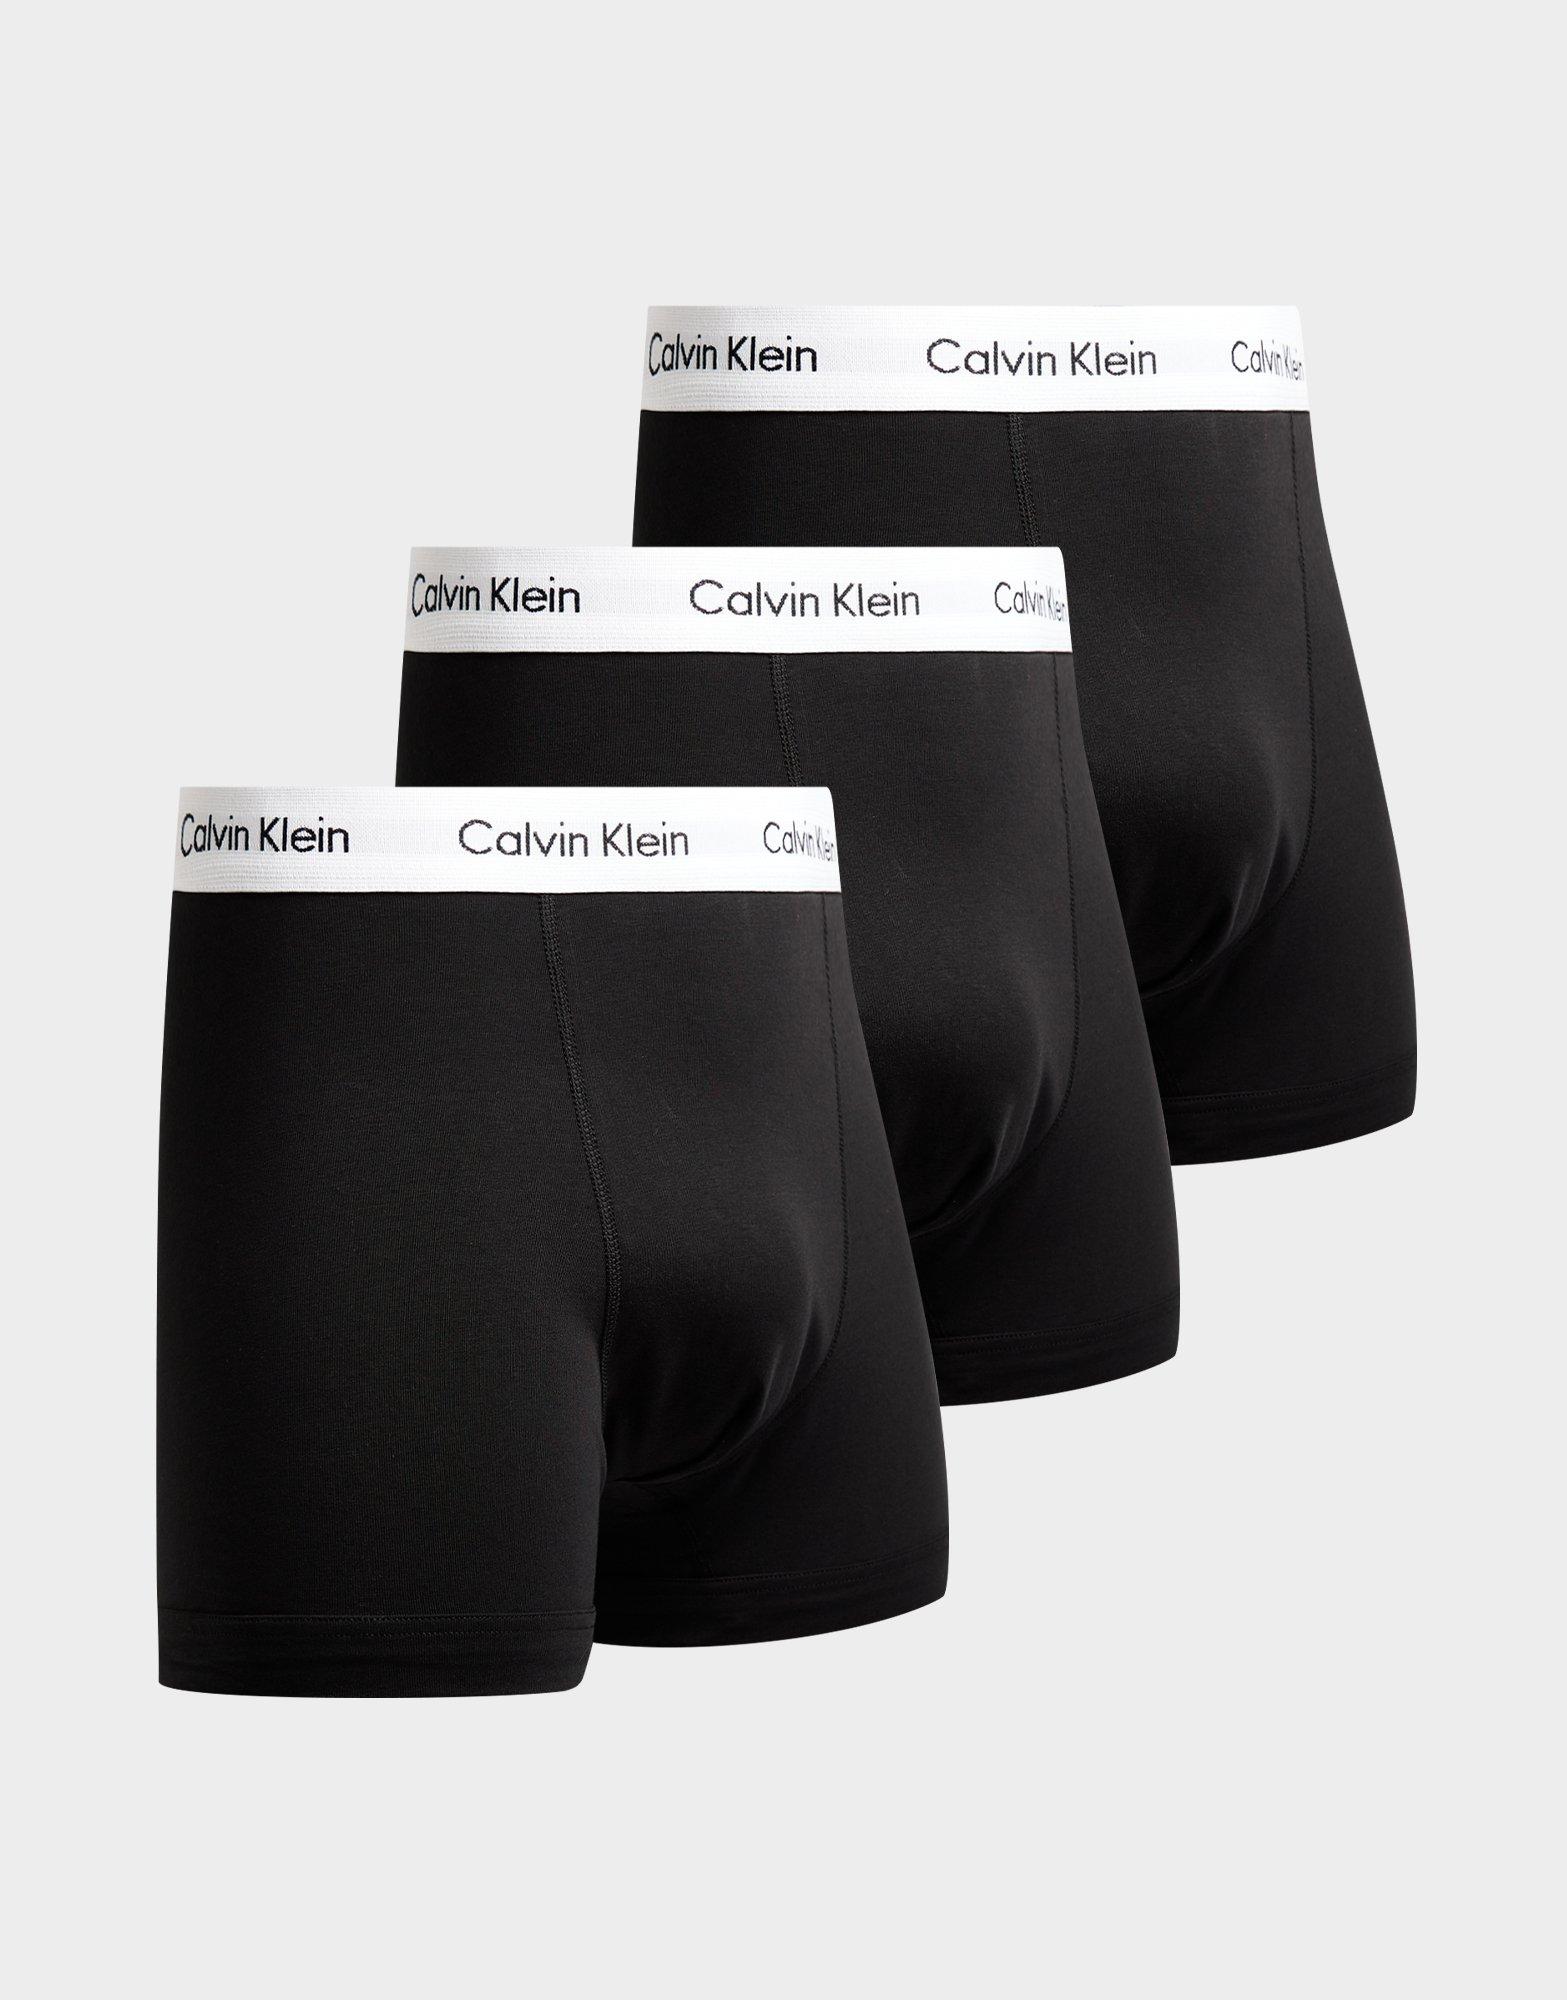 calvin klein cheap boxers